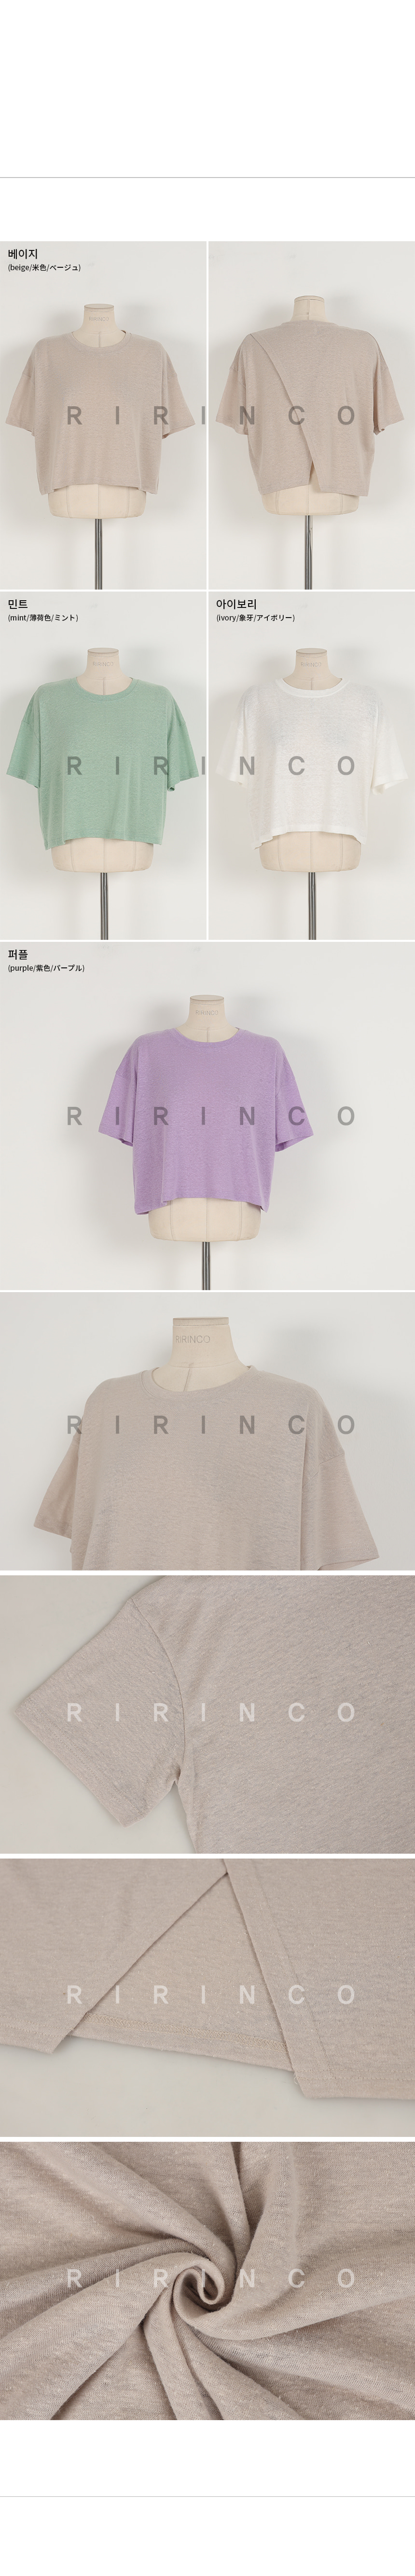 RIRINCO (リネン45%)クロップドバックスリットTシャツ